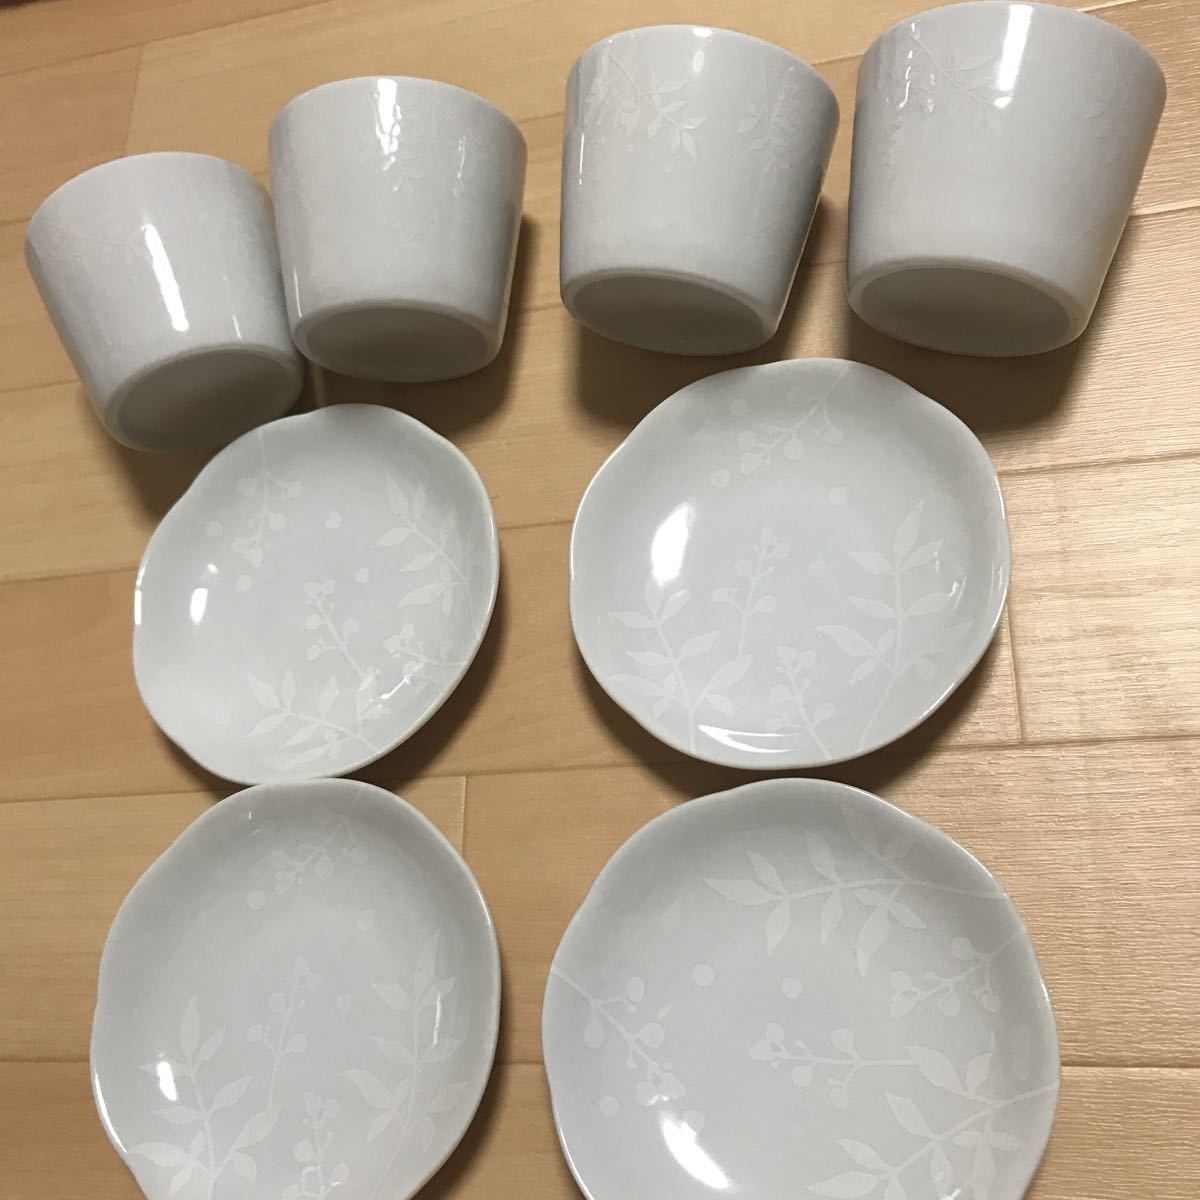  посуда не использовался товар юг небо cup 4 покупатель комплект горшок глубокий горшок . тарелка маленькая тарелка чашка пароварка тоже a50